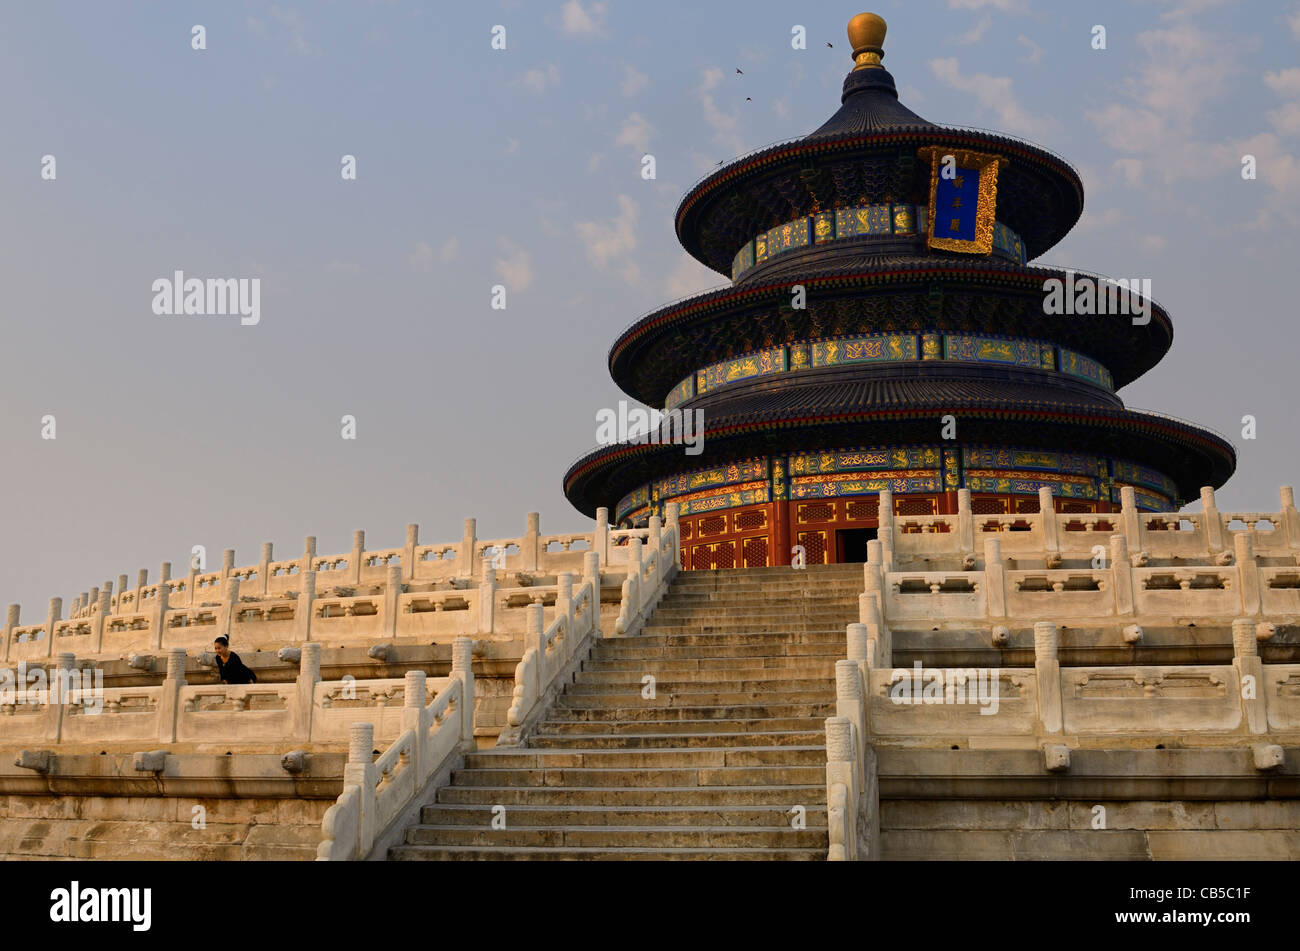 Tourist presso la Sala di Preghiera per i buoni raccolti presso il Tempio del cielo di Pechino Parco al tramonto Repubblica Popolare Cinese Foto Stock